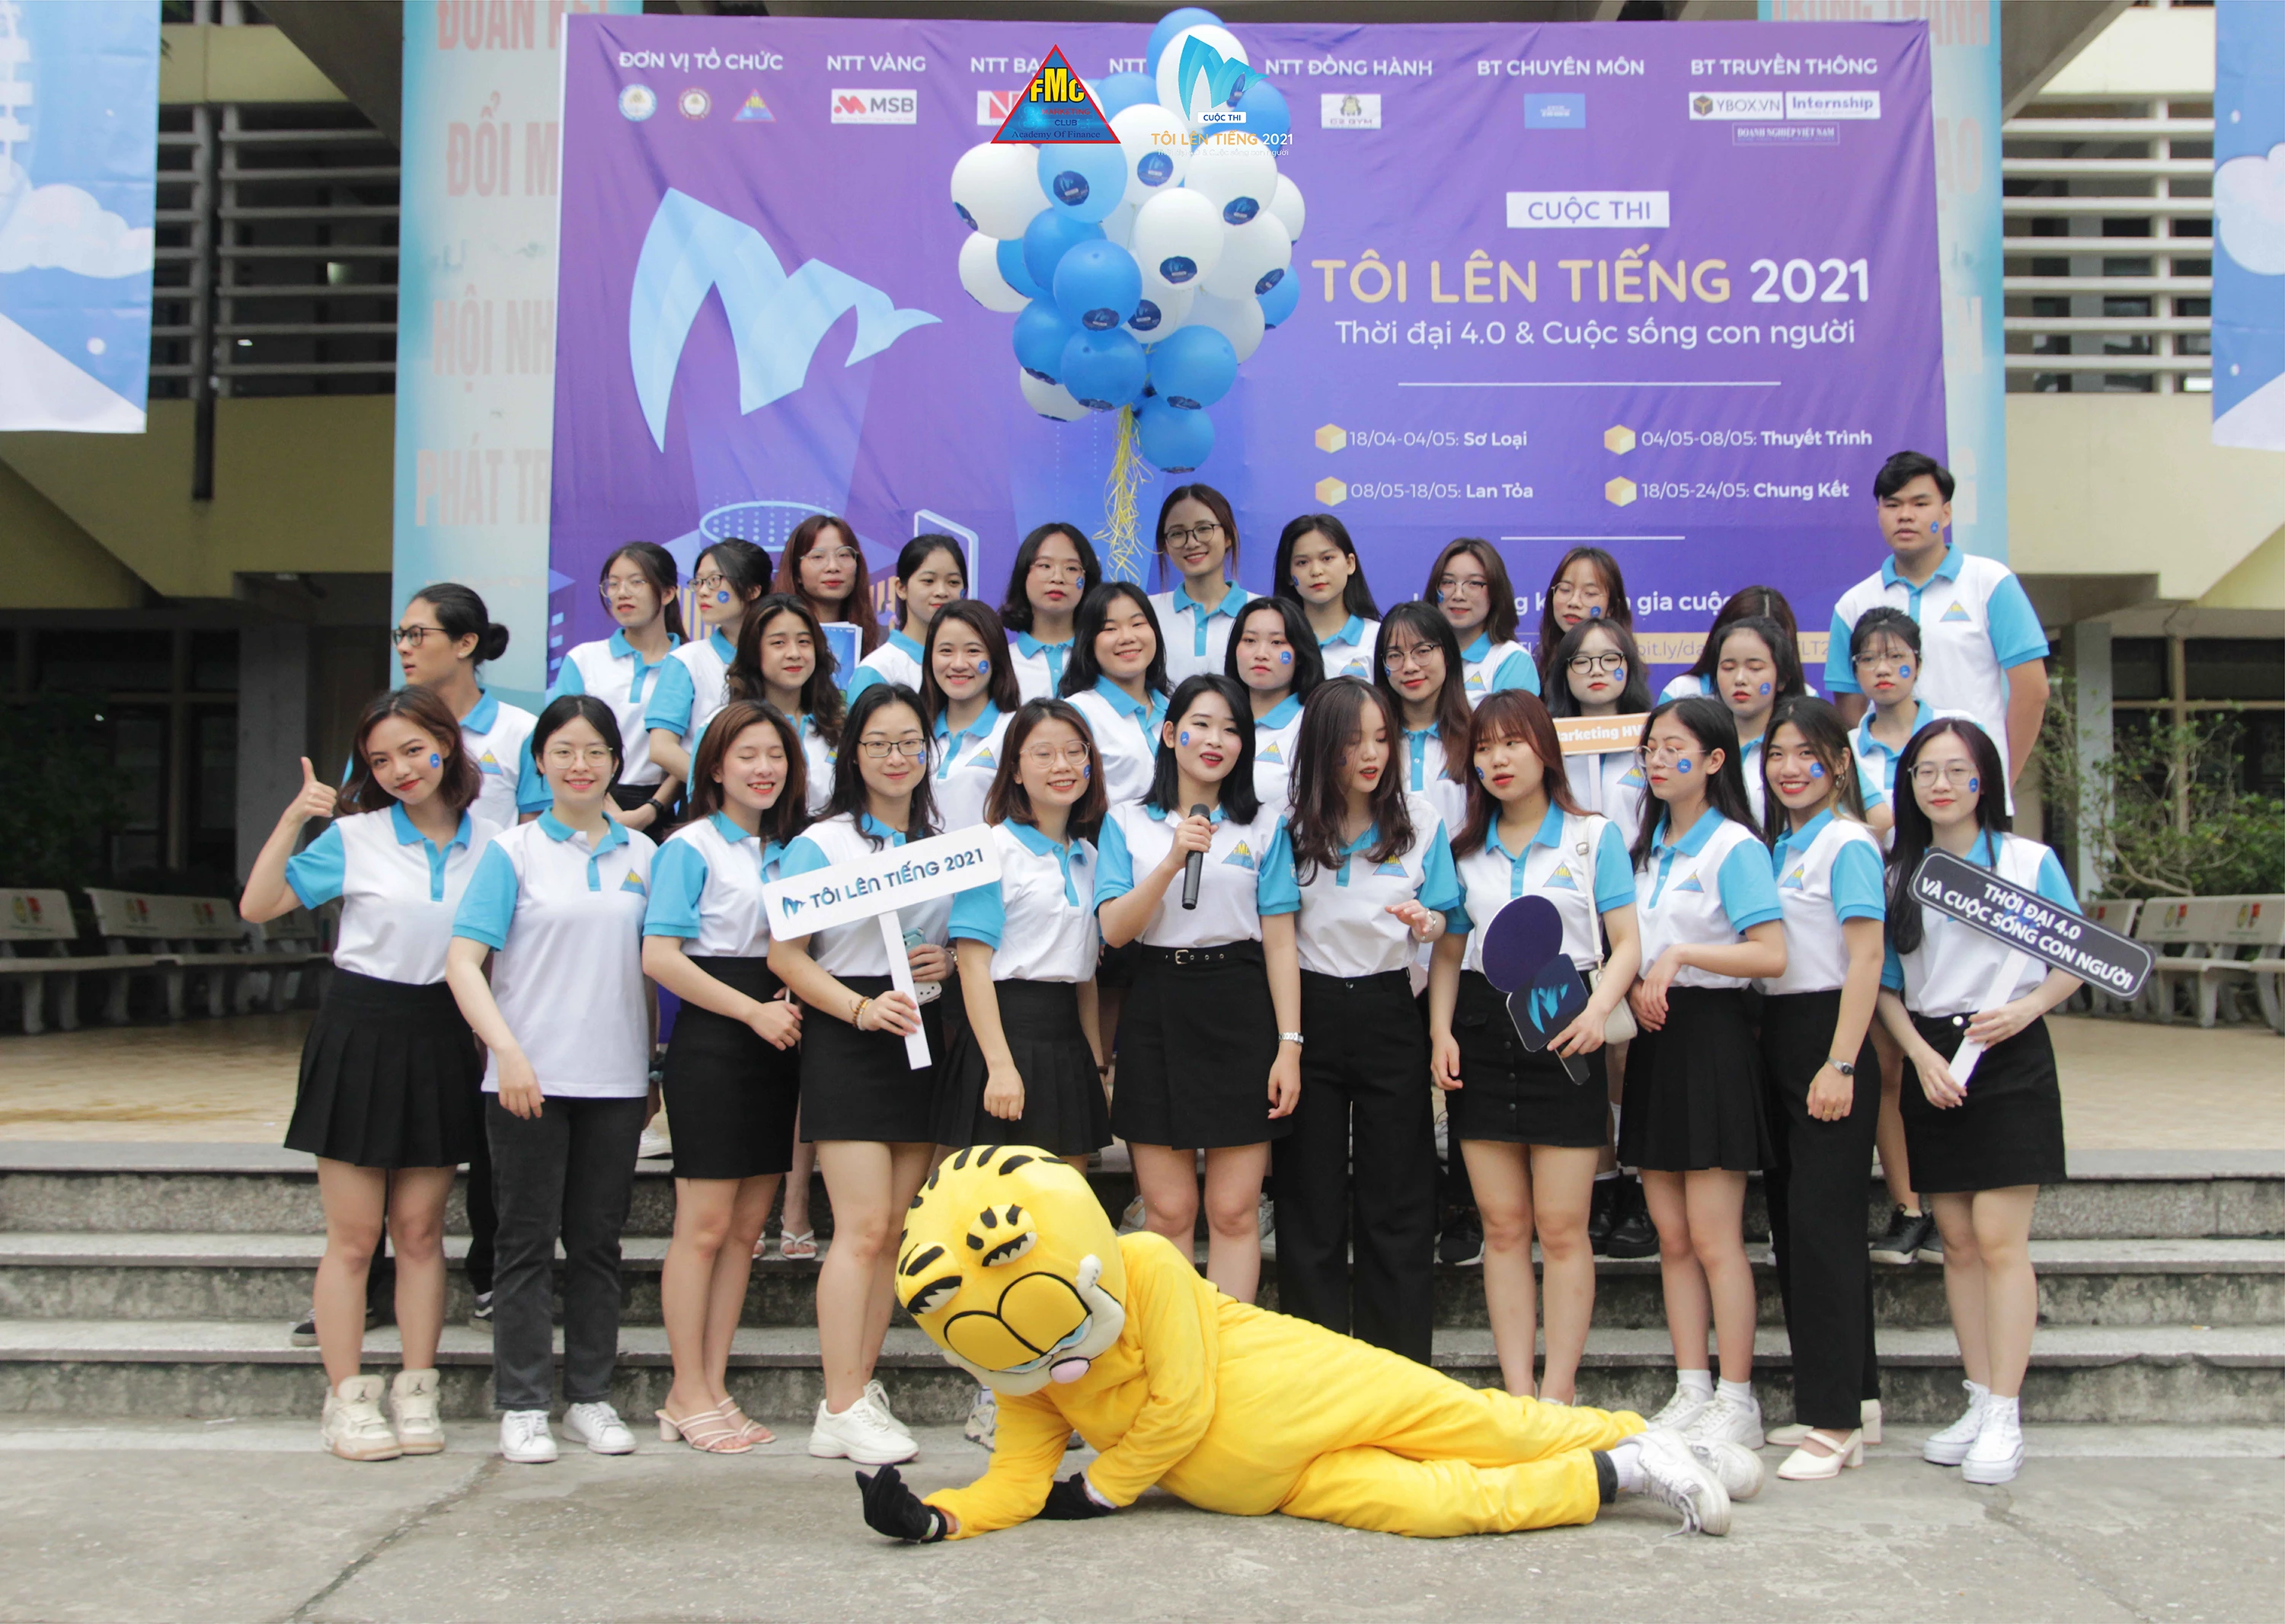 Trưởng BTC - Lại Thị Minh Anh chính thức khai mạc Cuộc thi Tôi lên tiếng 2021.